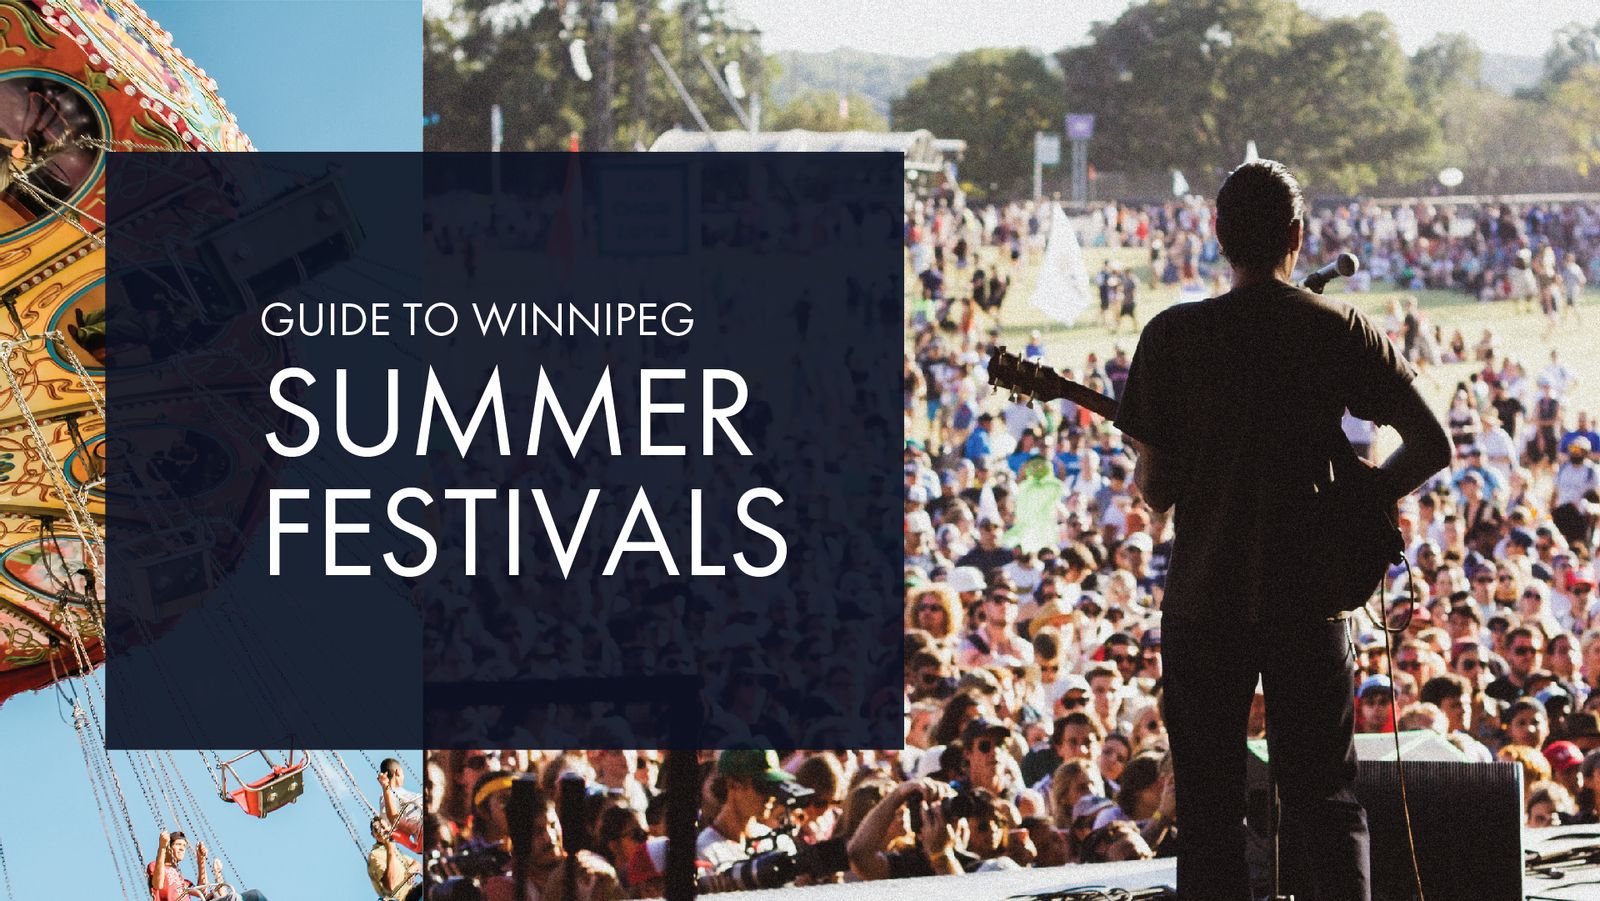 A Guide to Winnipeg Summer Festivals